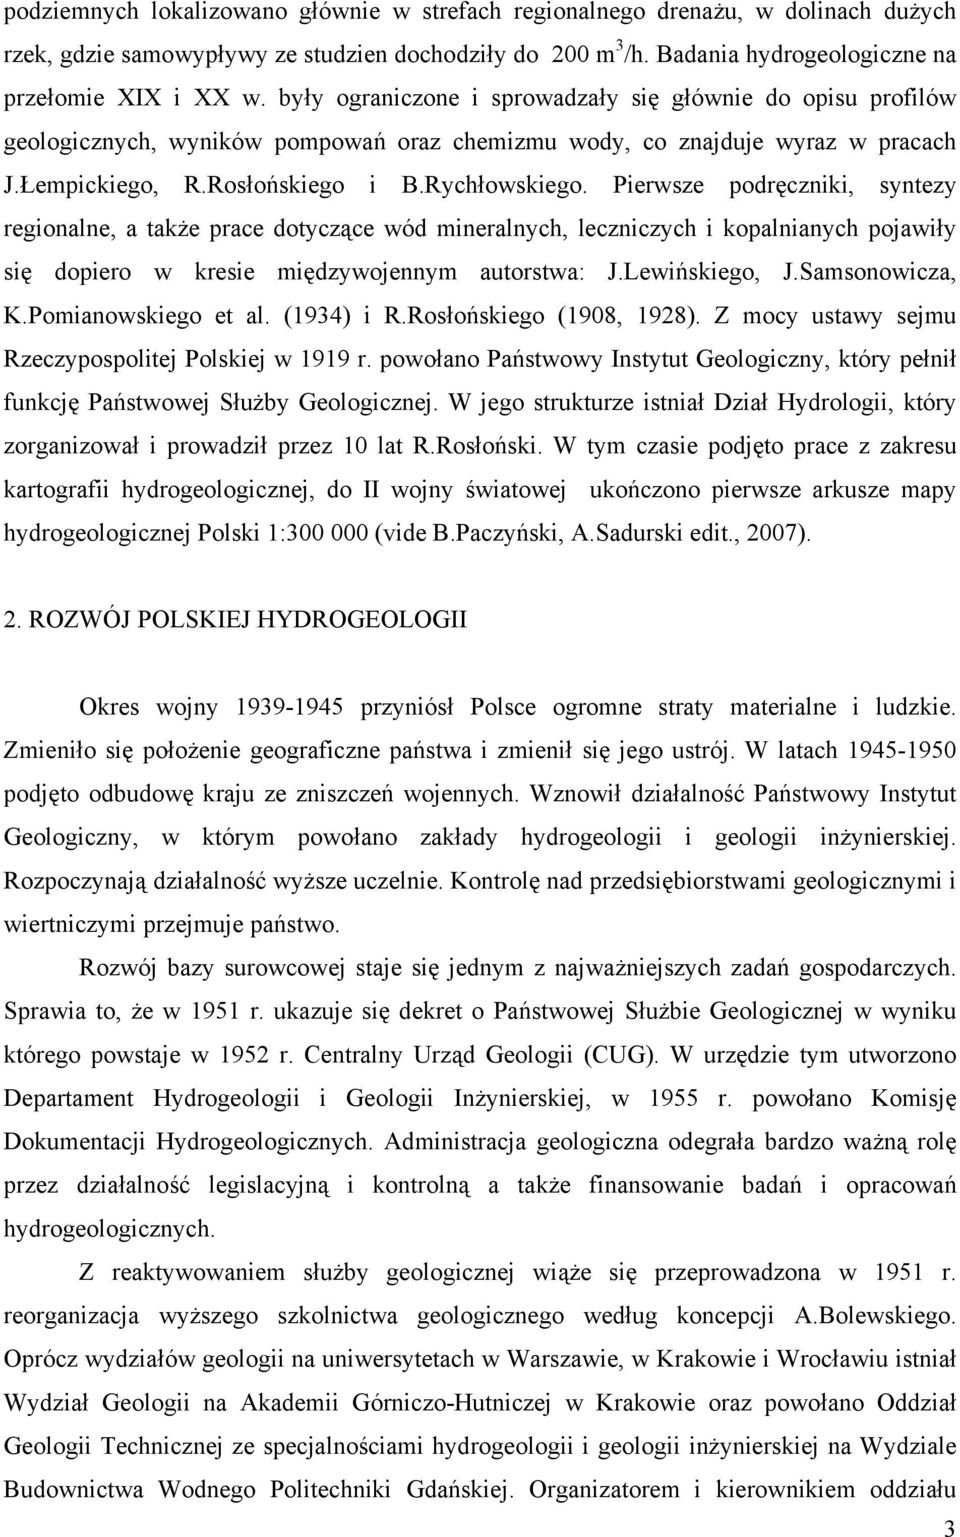 Pierwsze podręczniki, syntezy regionalne, a także prace dotyczące wód mineralnych, leczniczych i kopalnianych pojawiły się dopiero w kresie międzywojennym autorstwa: J.Lewińskiego, J.Samsonowicza, K.